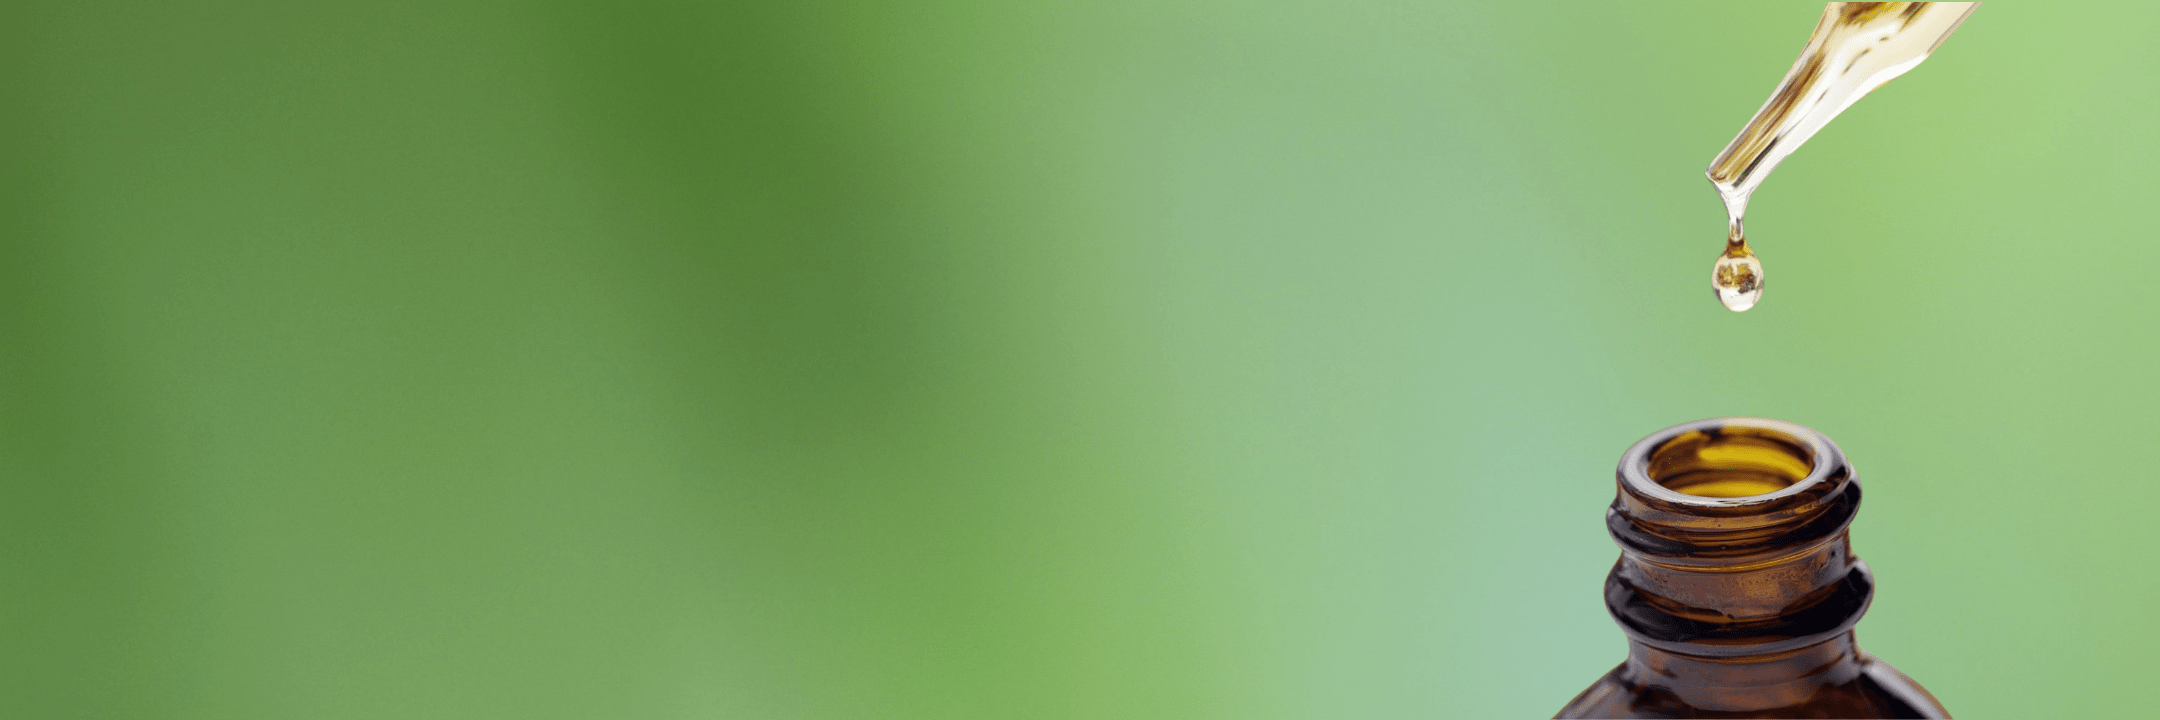 Gotero con medicina transparente en fondo verde